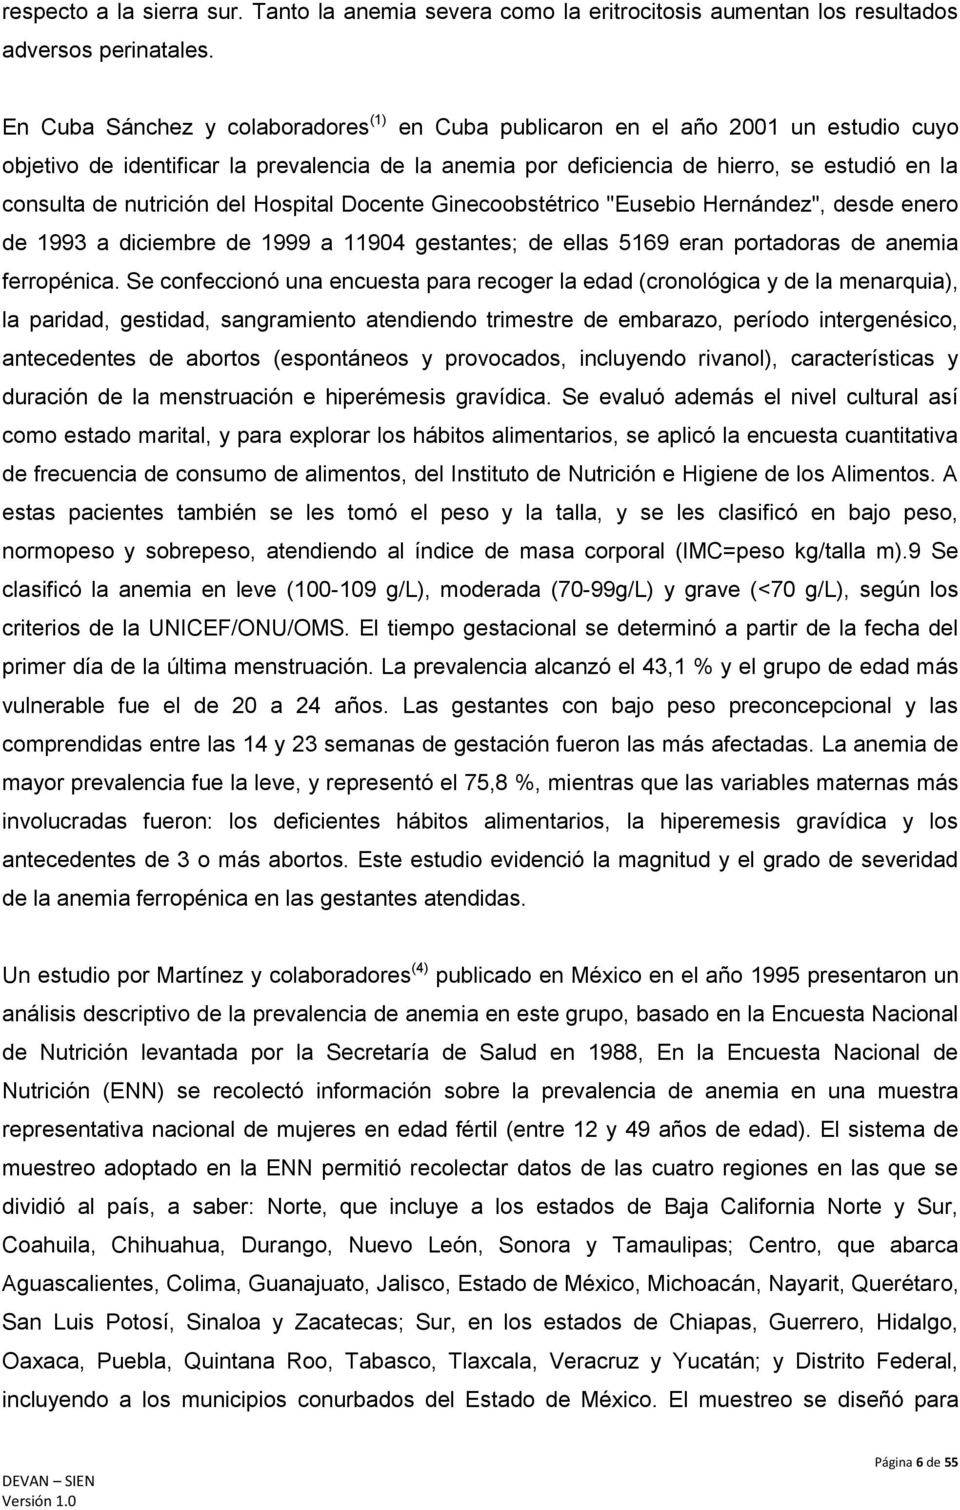 nutrición del Hospital Docente Ginecoobstétrico "Eusebio Hernández", desde enero de 1993 a diciembre de 1999 a 11904 gestantes; de ellas 5169 eran portadoras de anemia ferropénica.